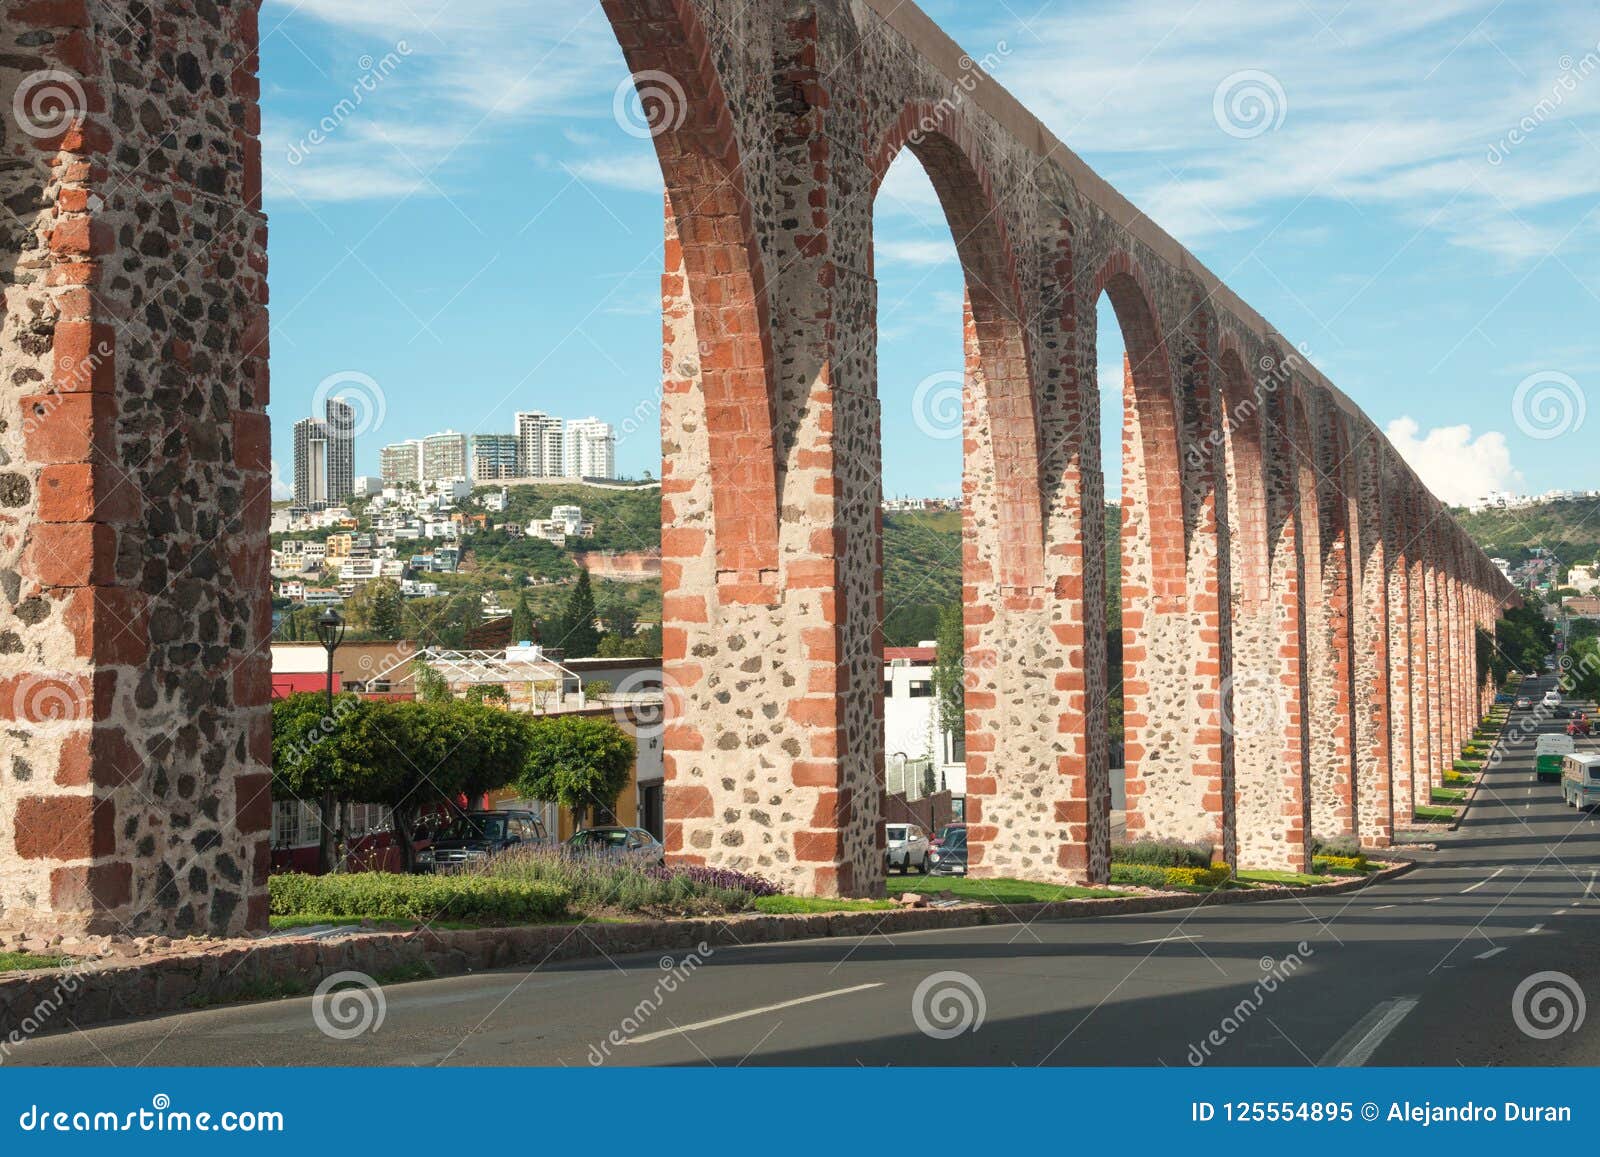 aqueduct at queretaro